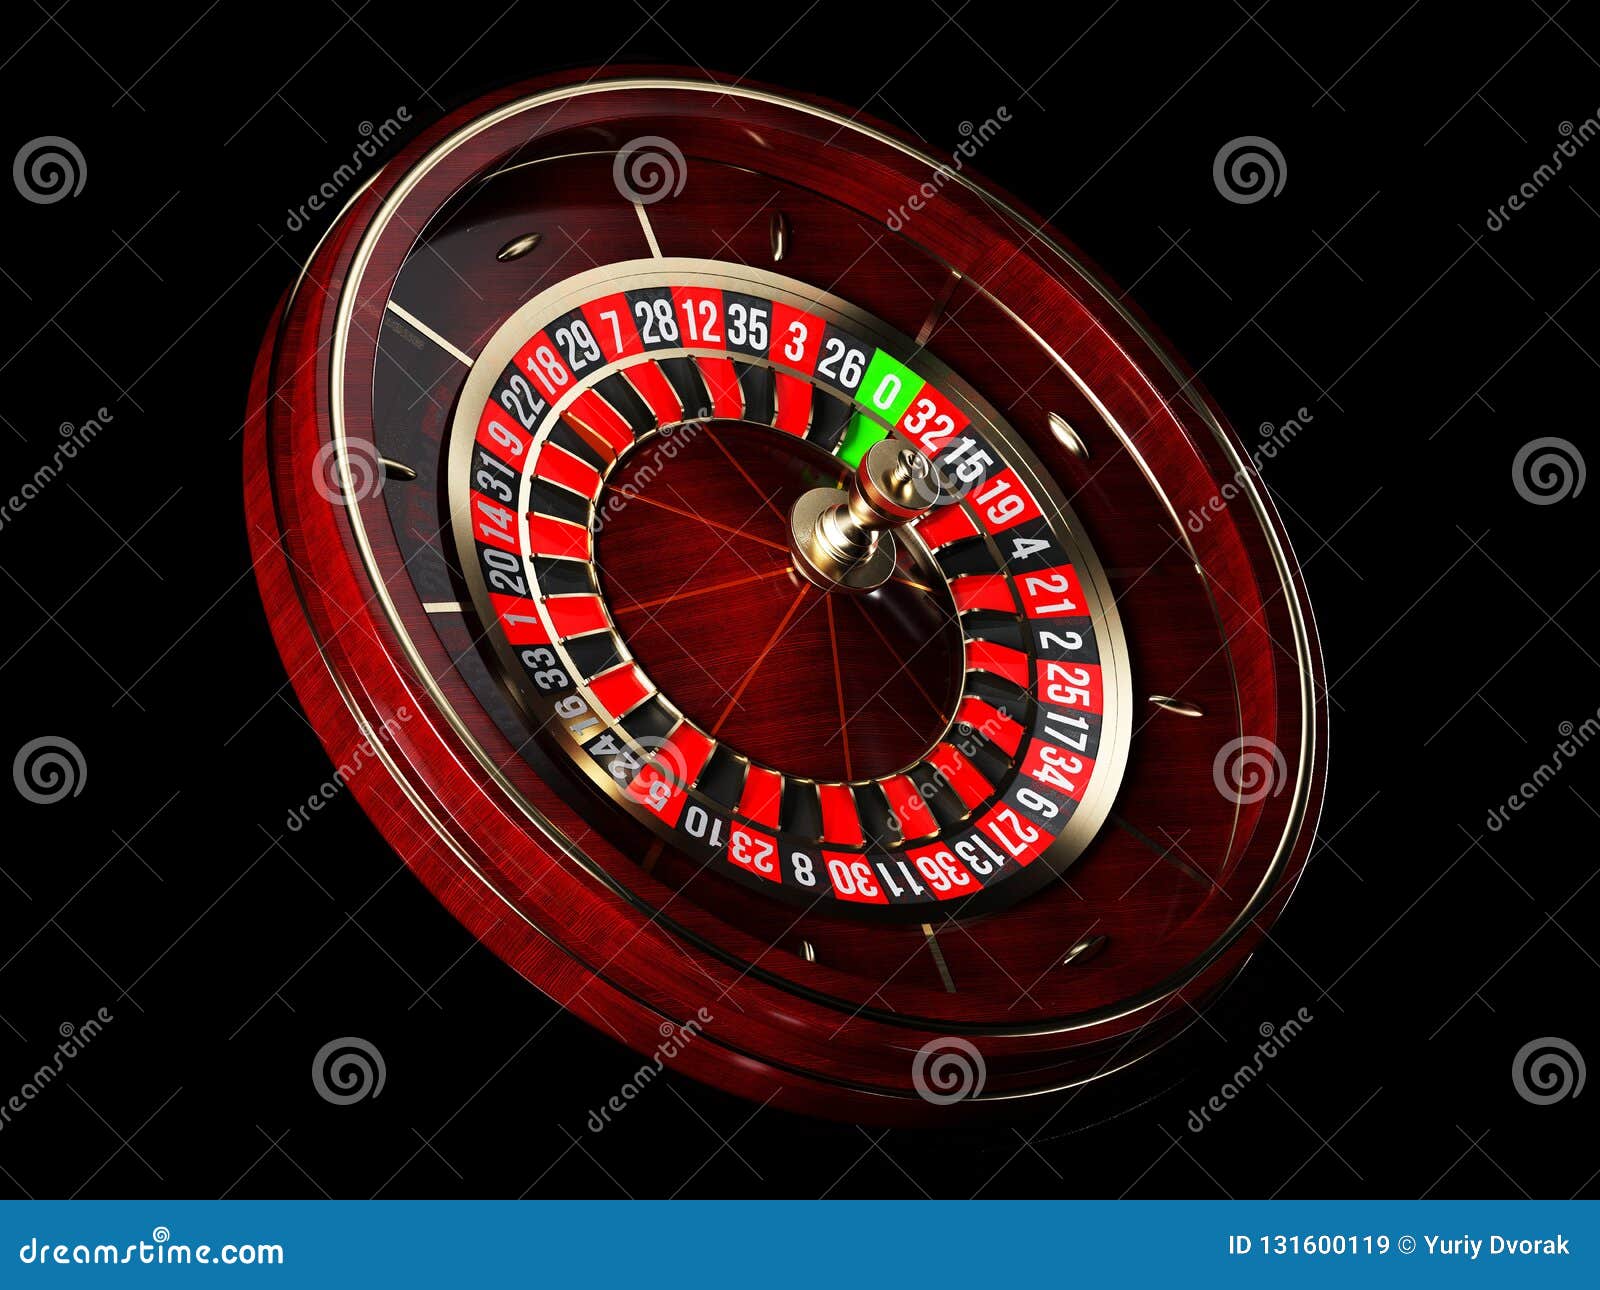 gambling : Den enkle måten